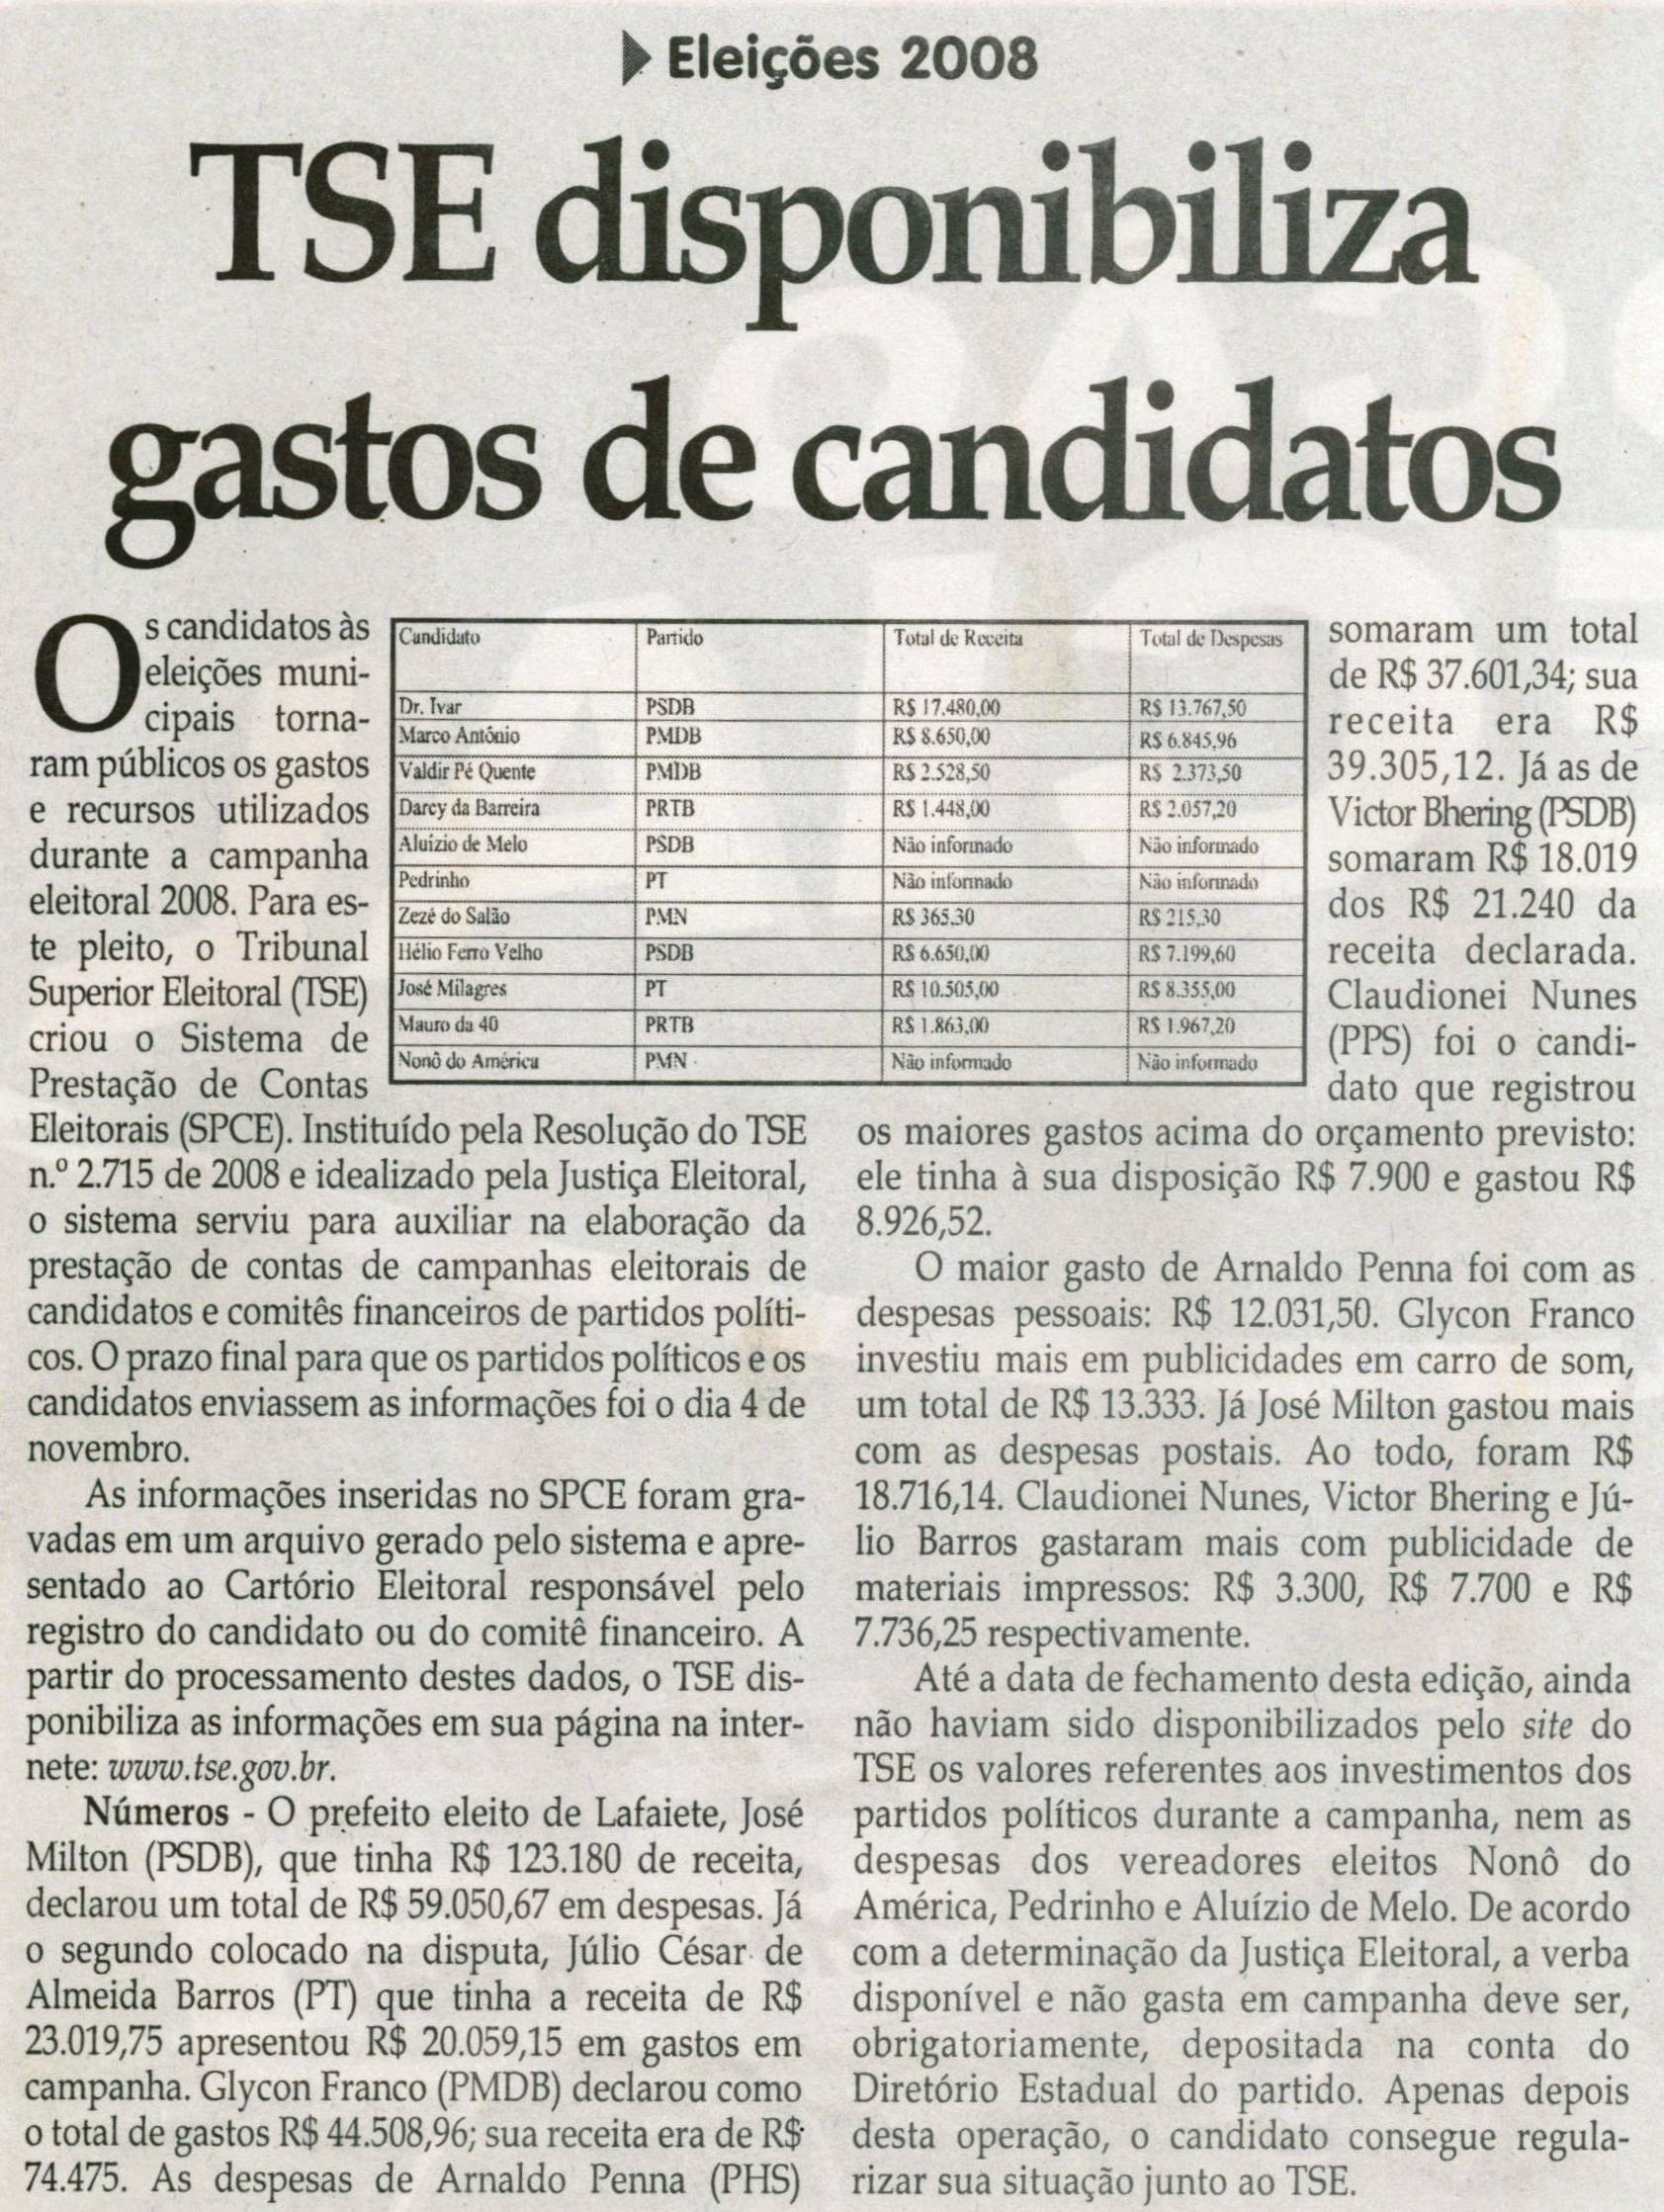 Eleições 2008, TSE disponibiliza gastos de candidatos, Jornal Correio da Cidade, 06 dez. 2008, p. 04.